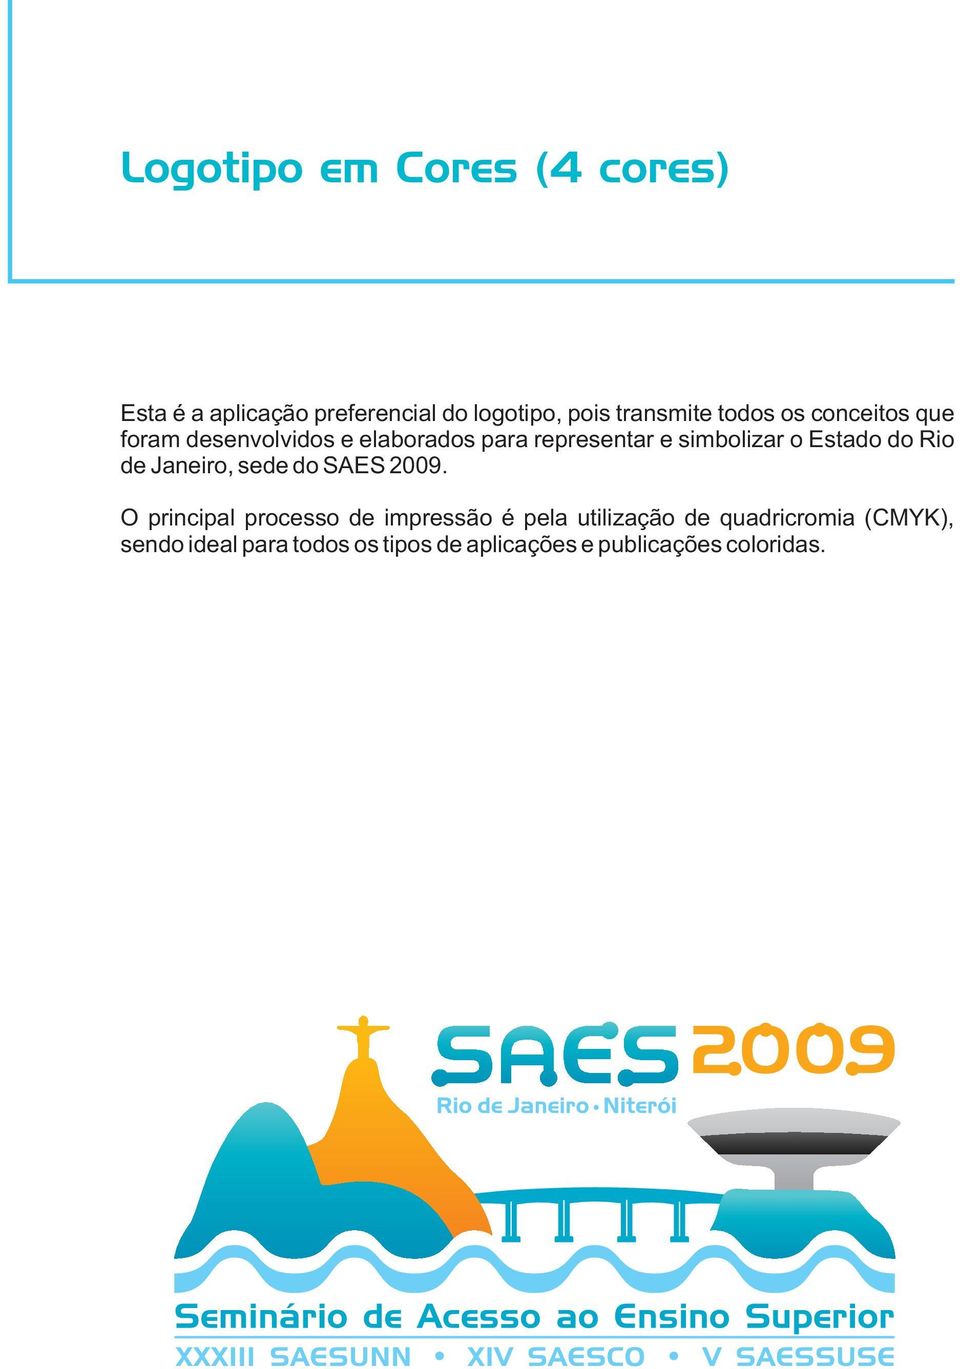 Estado do Rio de Janeiro, sede do SAES 2009.